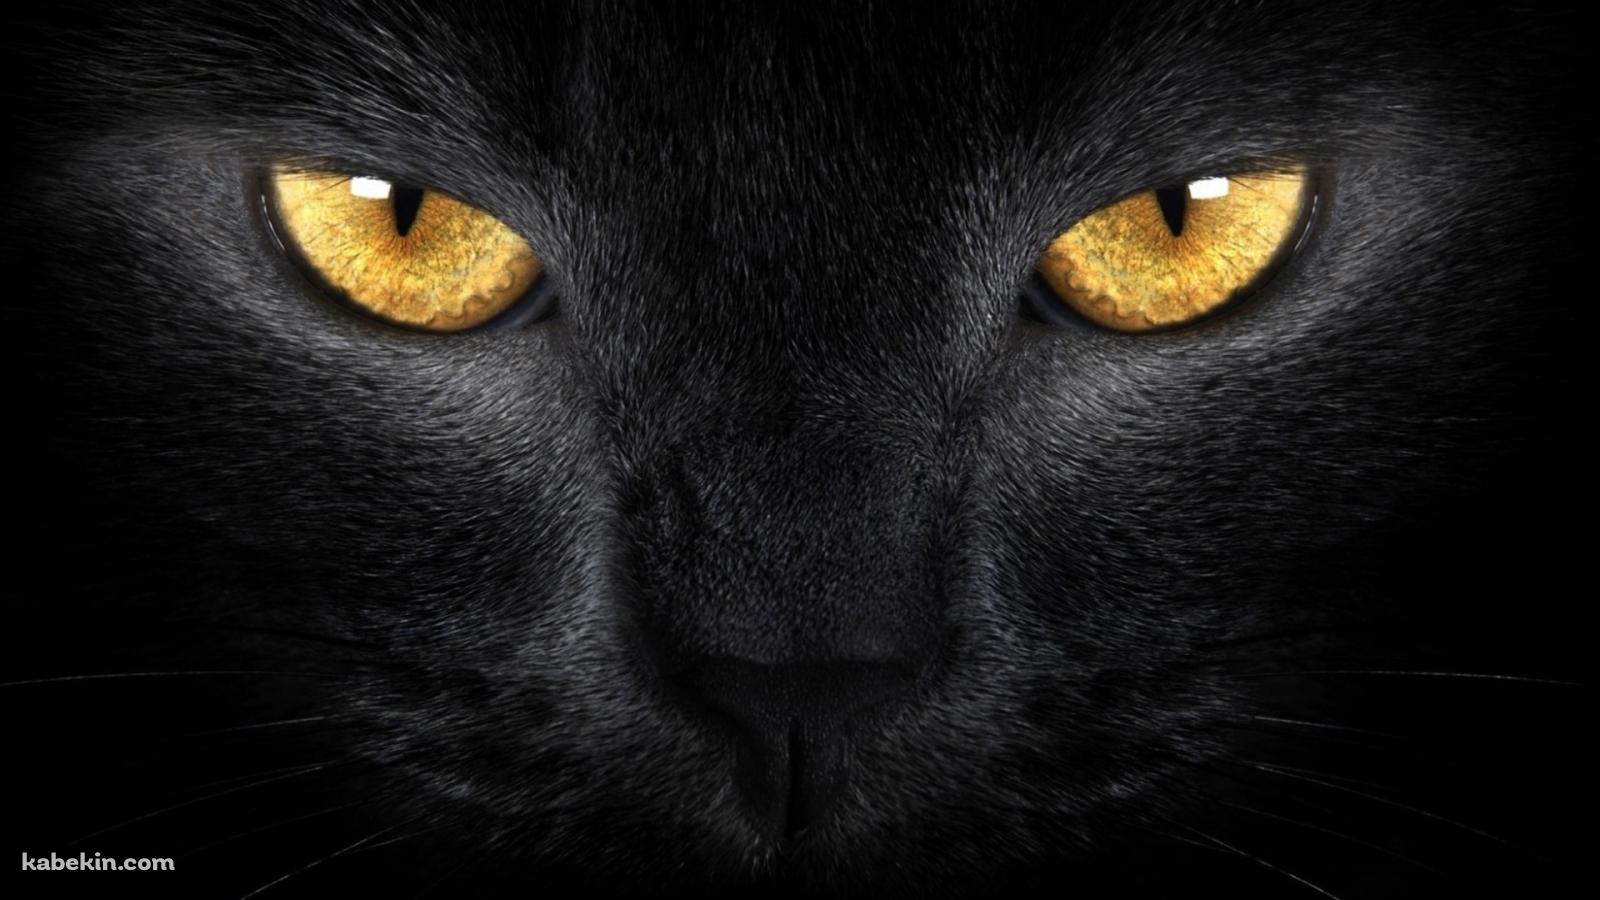 黄色い眼をした黒い猫の壁紙(1600px x 900px) 高画質 PC・デスクトップ用